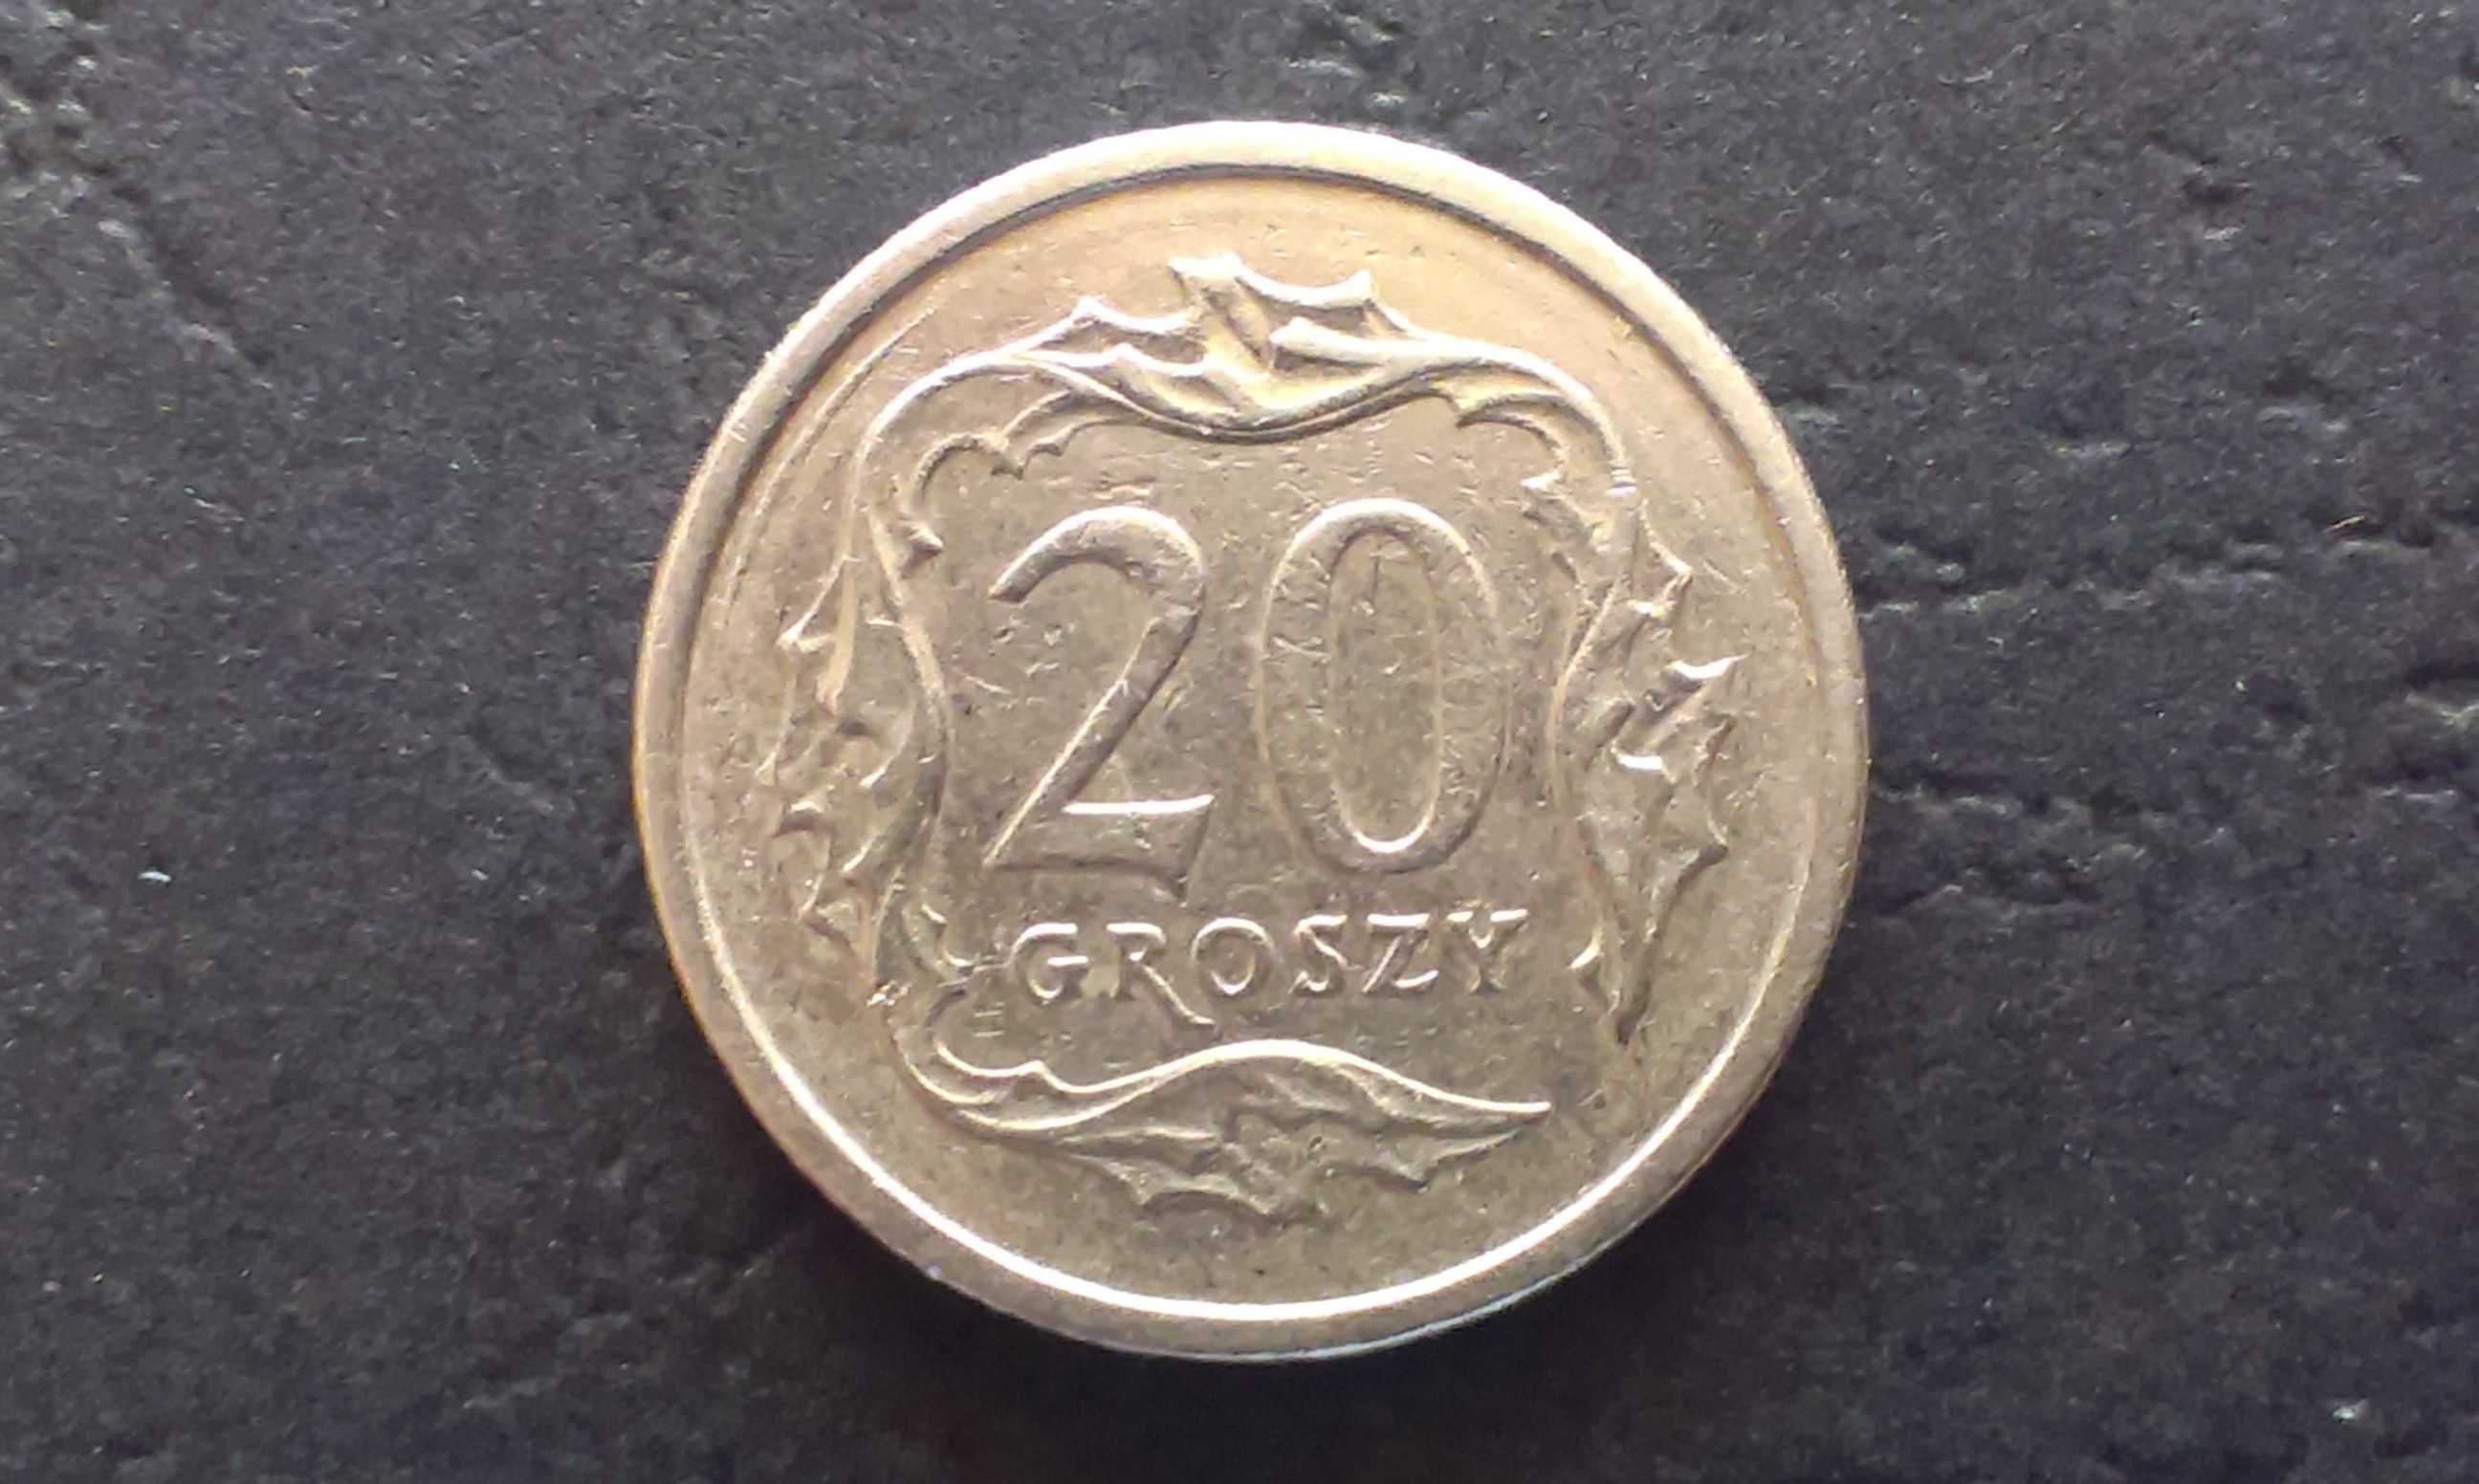 Moneta 20 groszy 2001, destrukt - dodatkowe pierścienie.